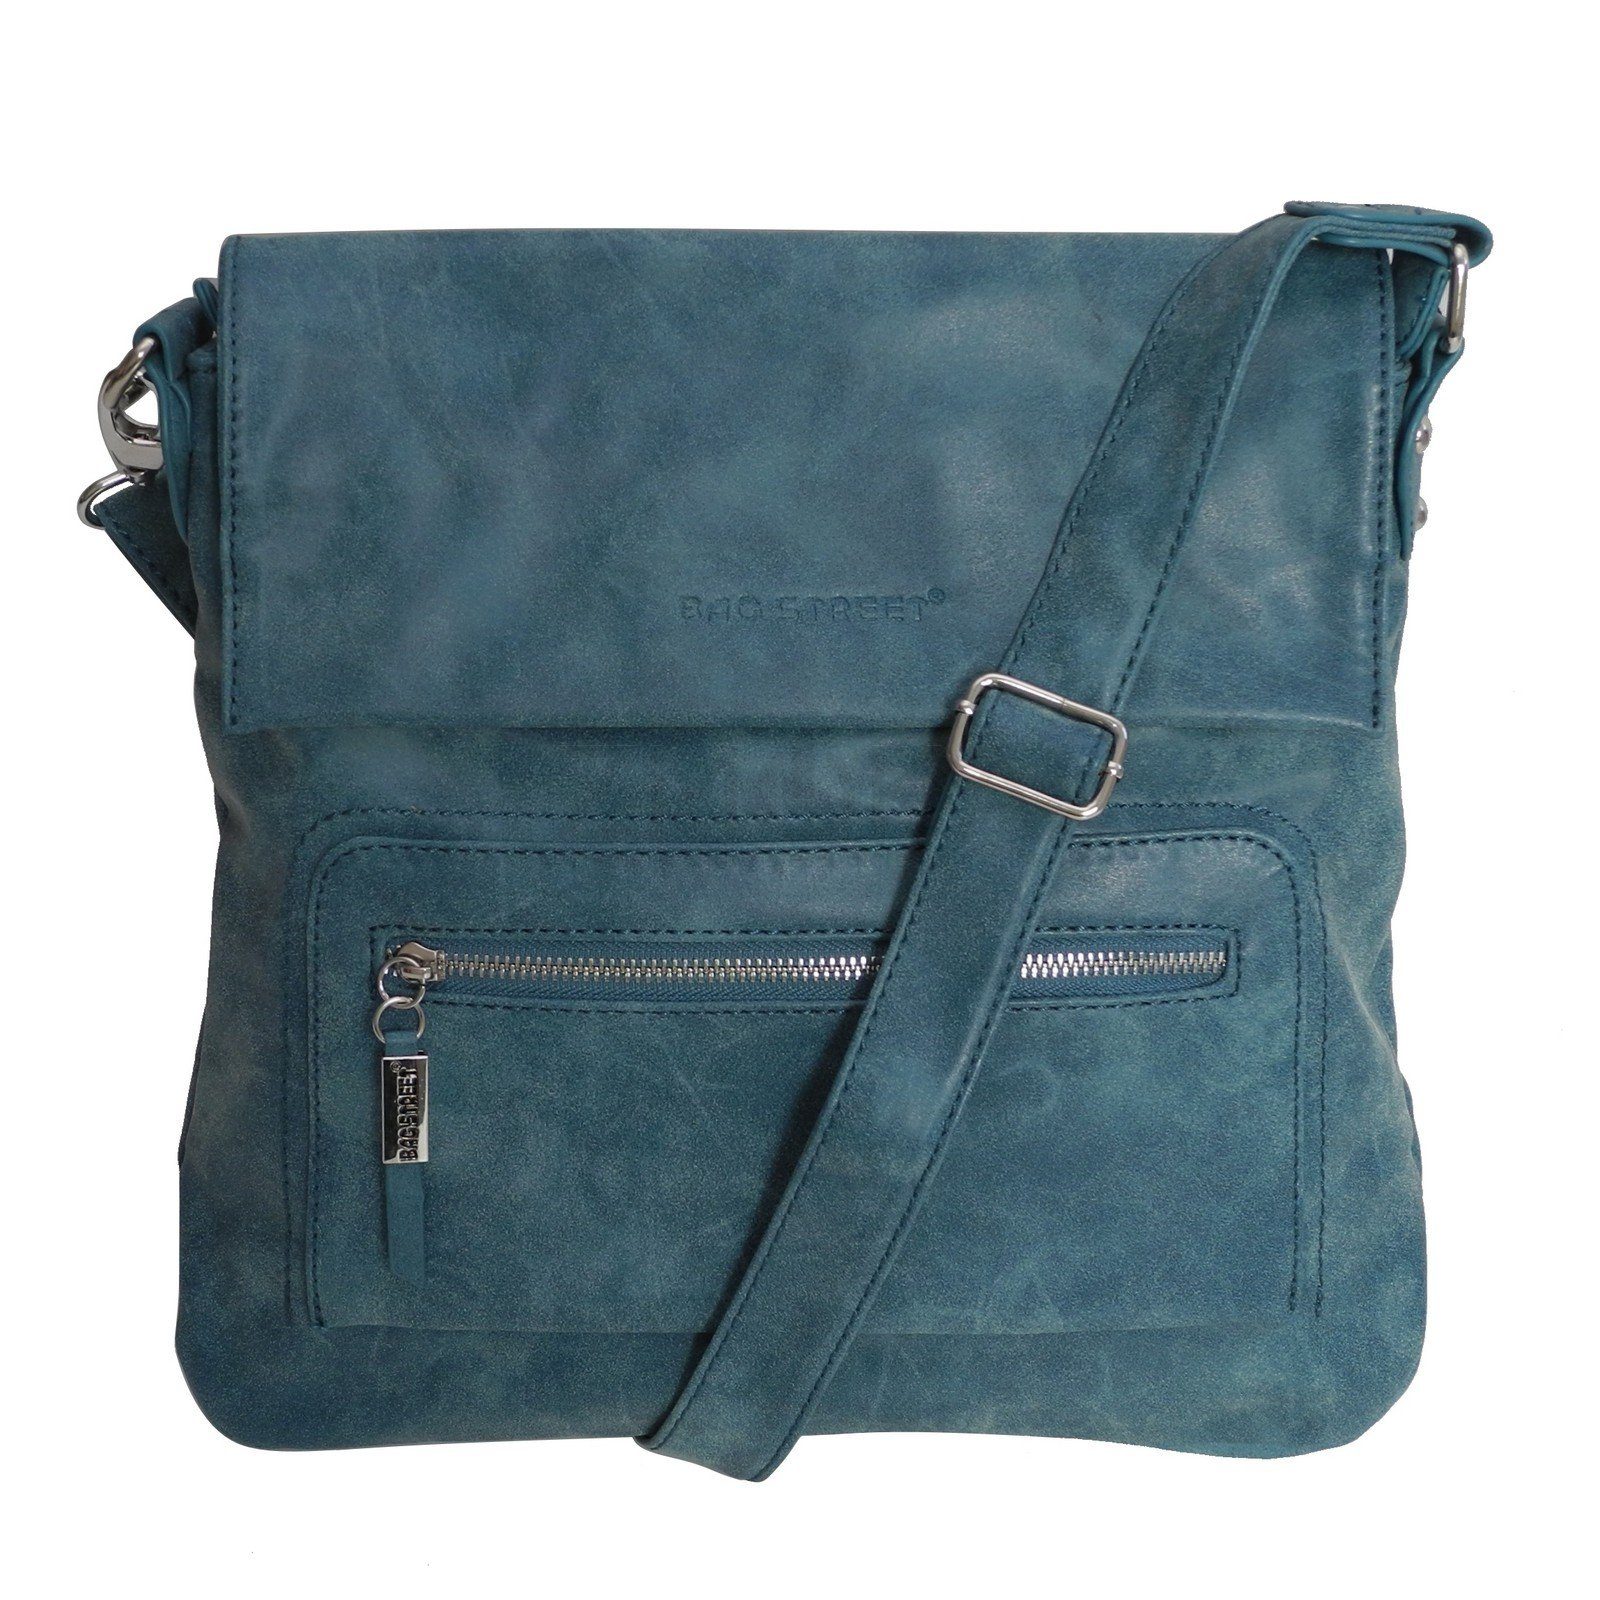 BAG STREET Handtasche Bag Street - Damen Messengerbag Damentasche Umhängetasche Auswahl Blau